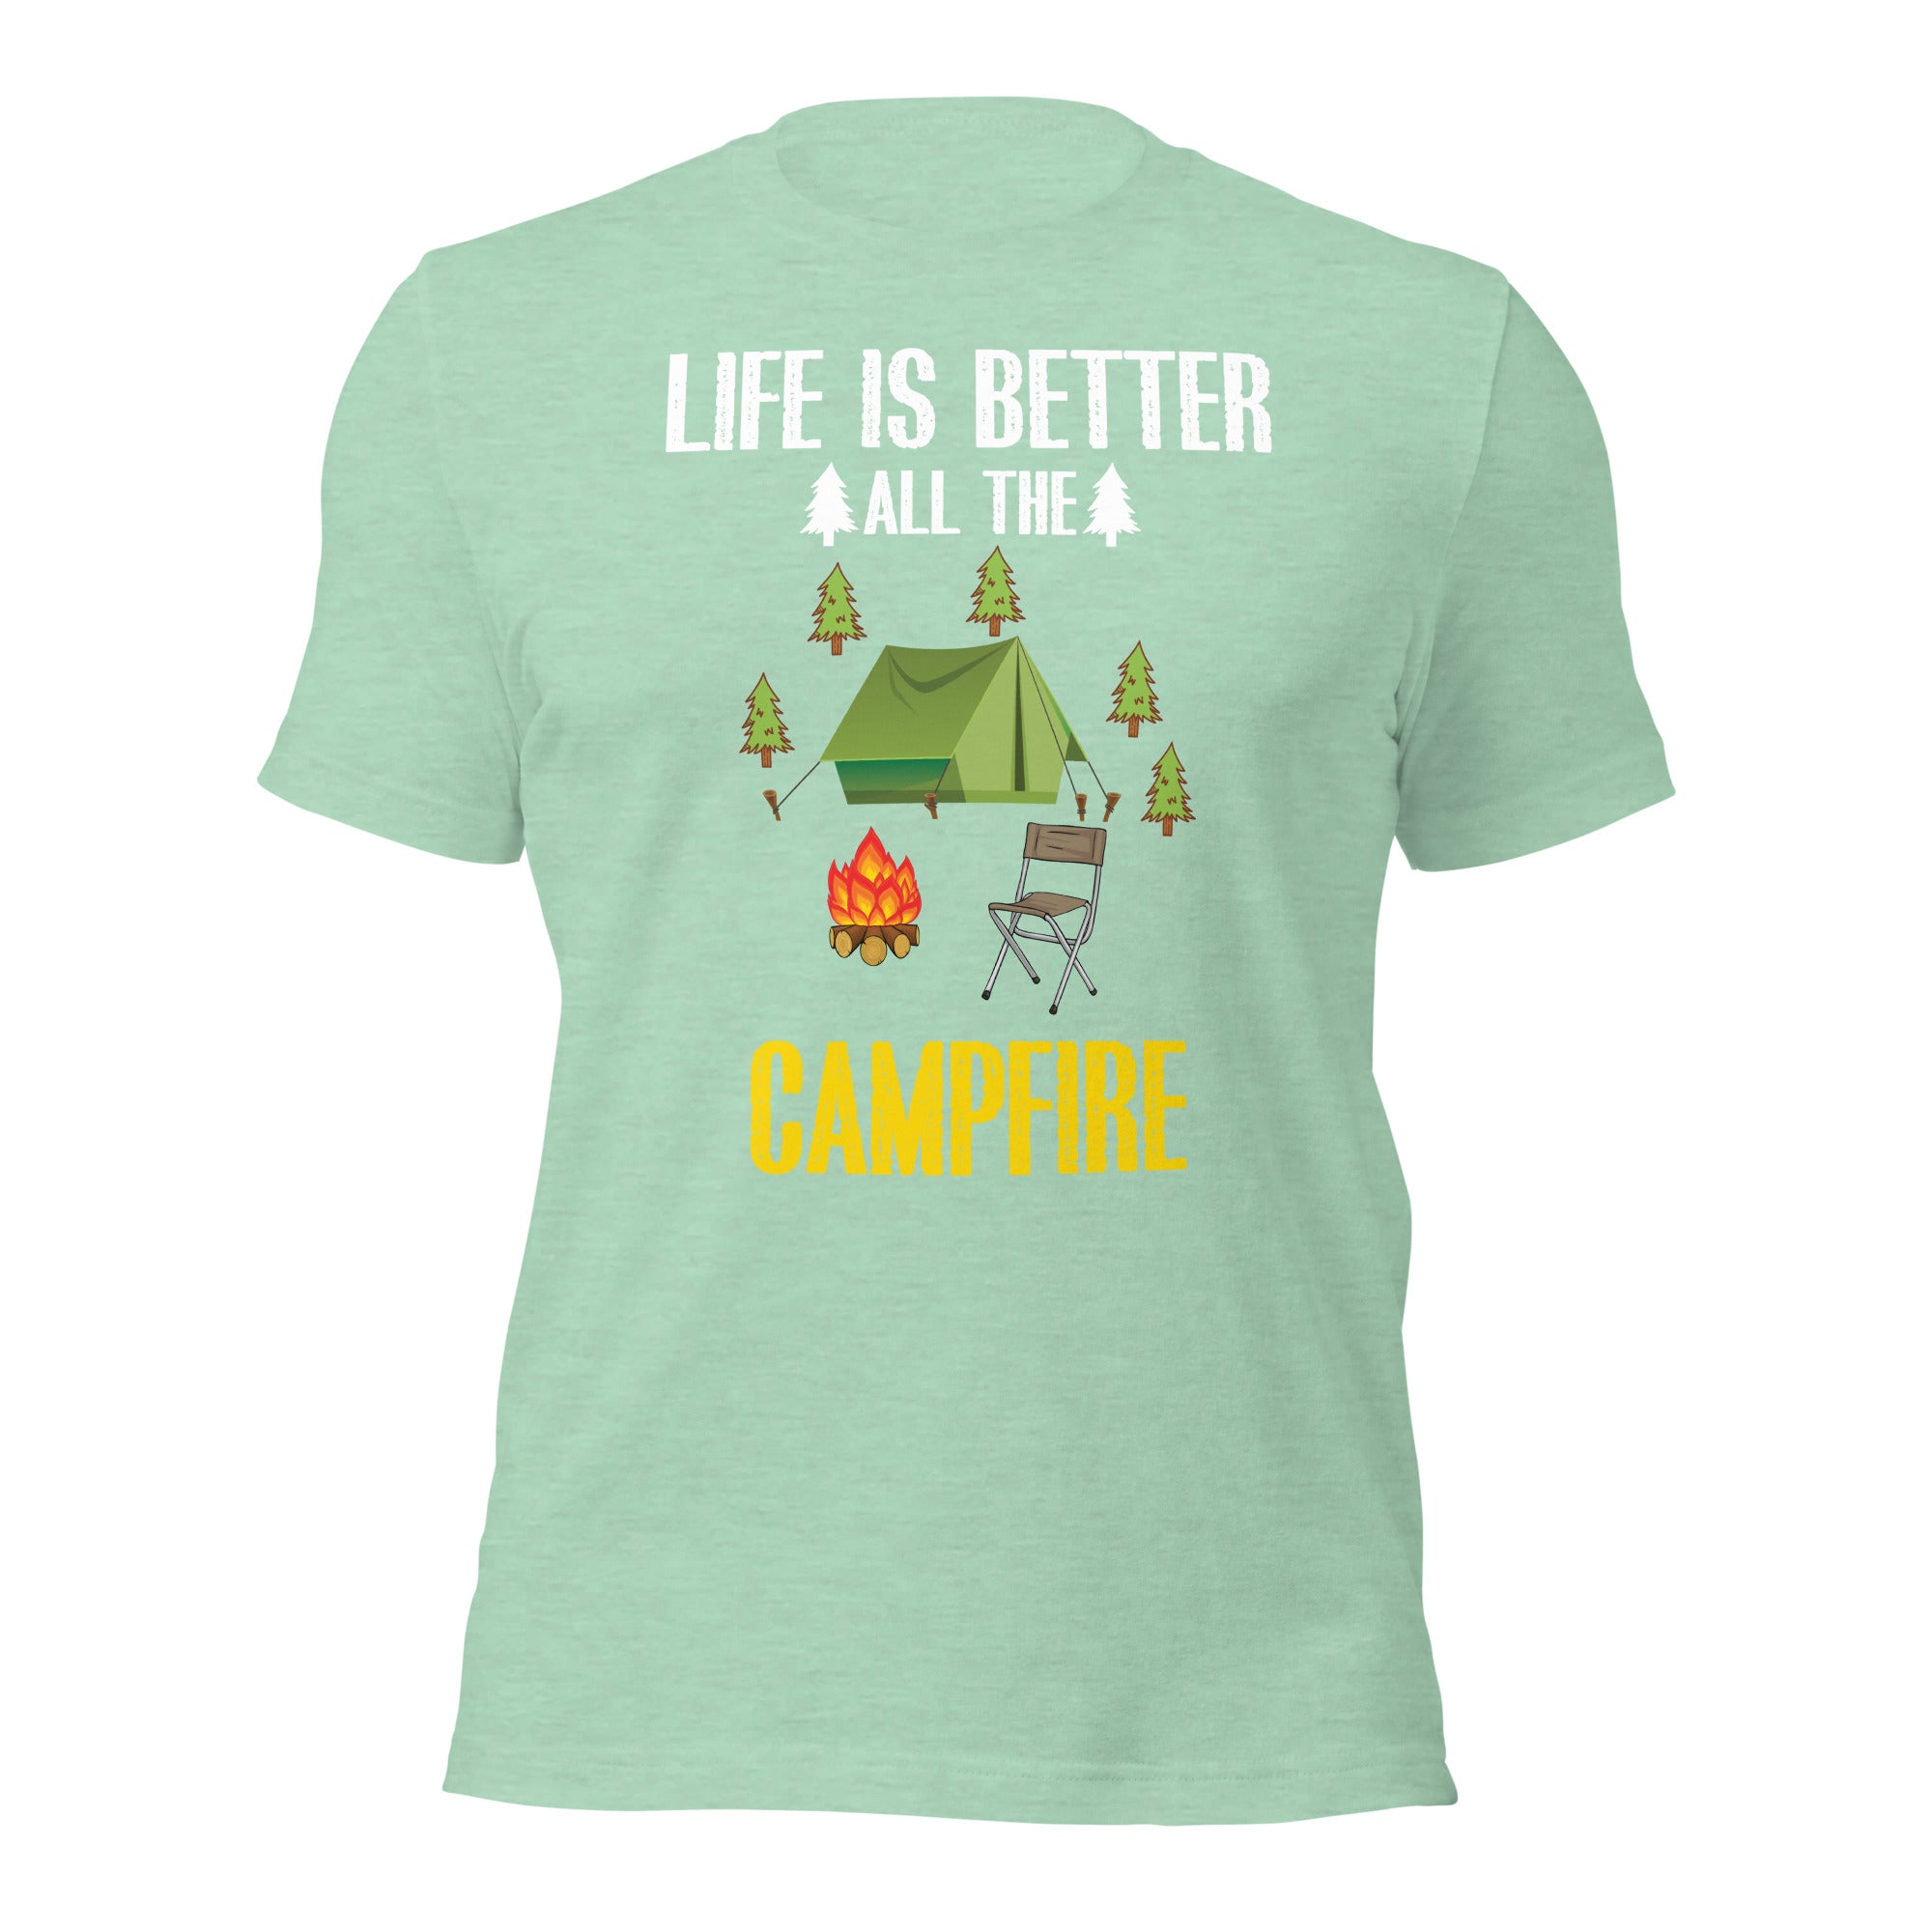 Life is Better Campfire T-Shirt